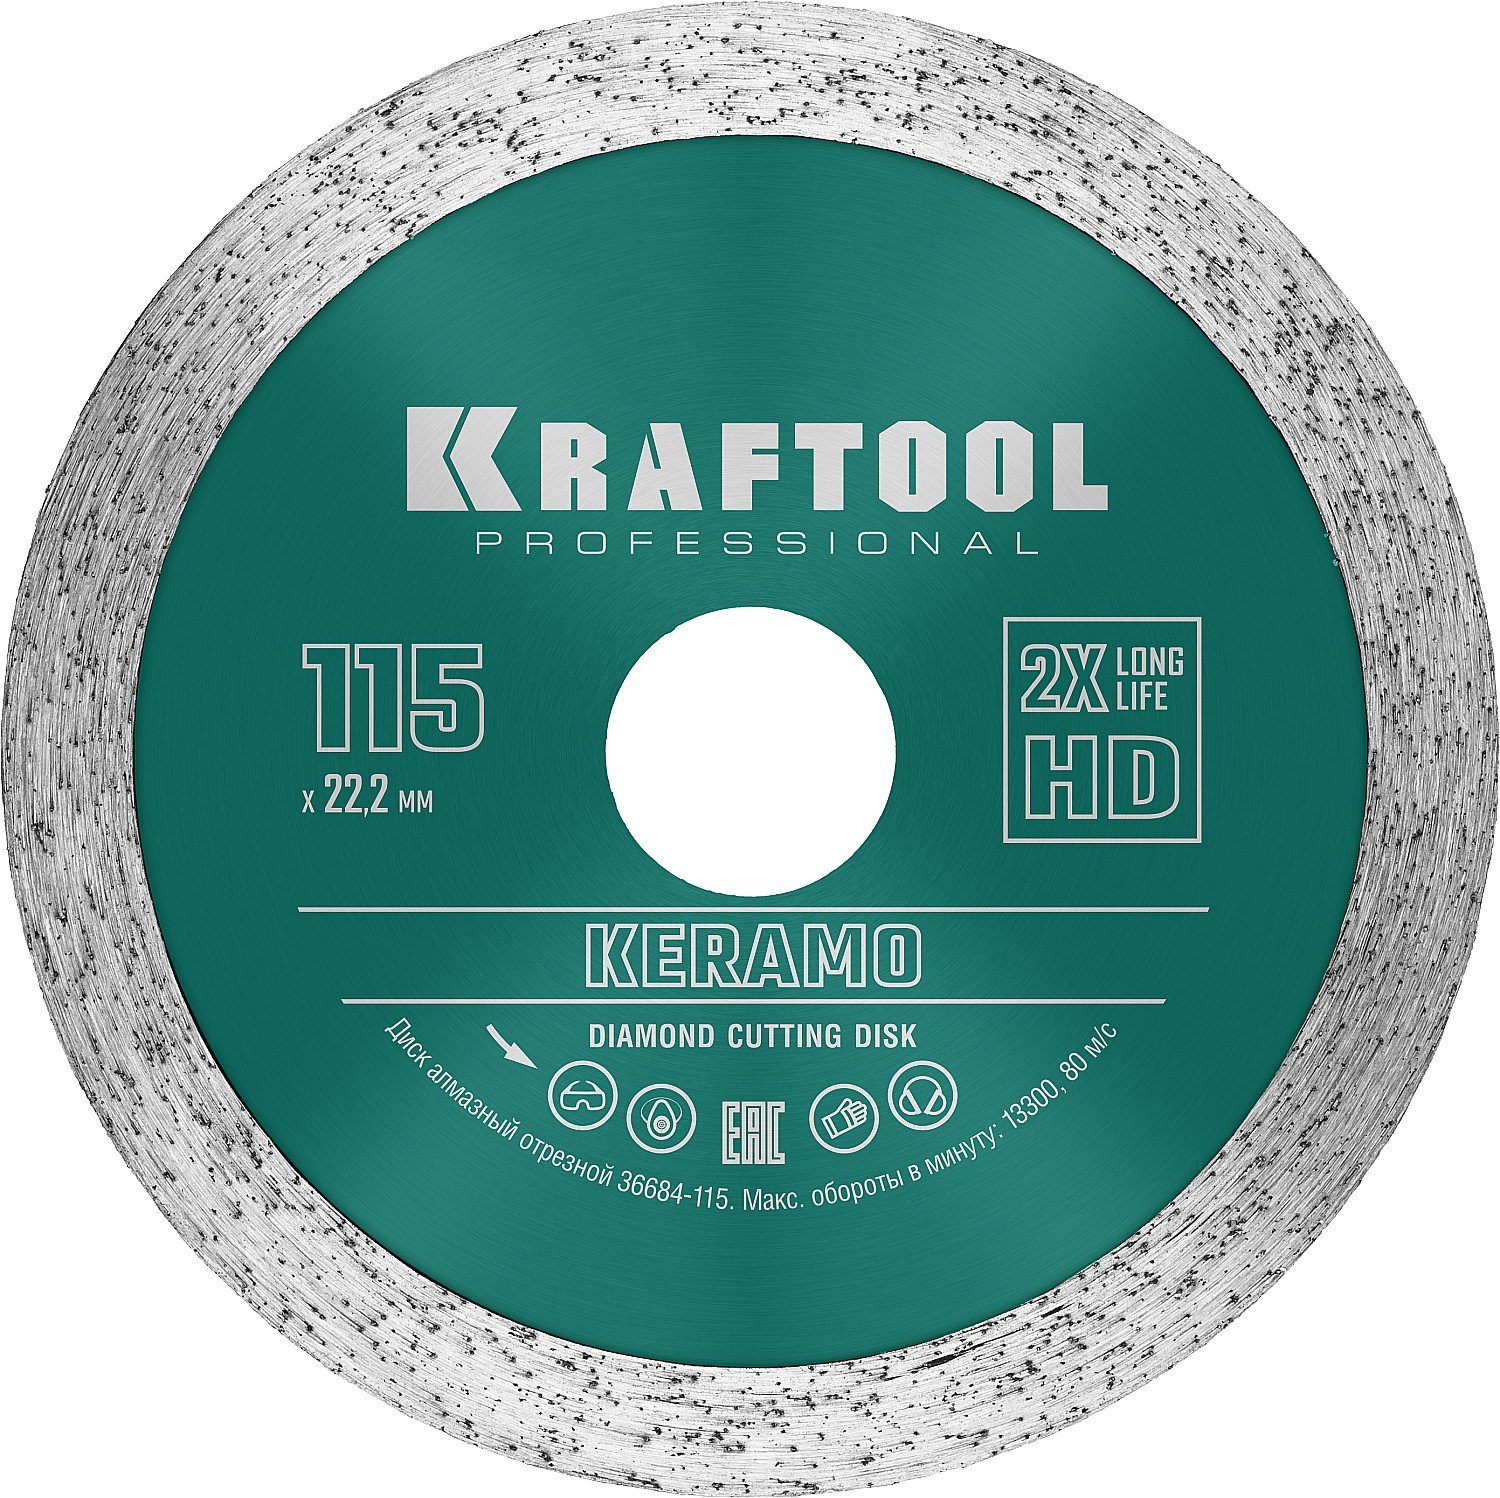 KRAFTOOL KERAMO 115 ,      ,  , ,  (11522.2 , 102.2 ), (36684-115)